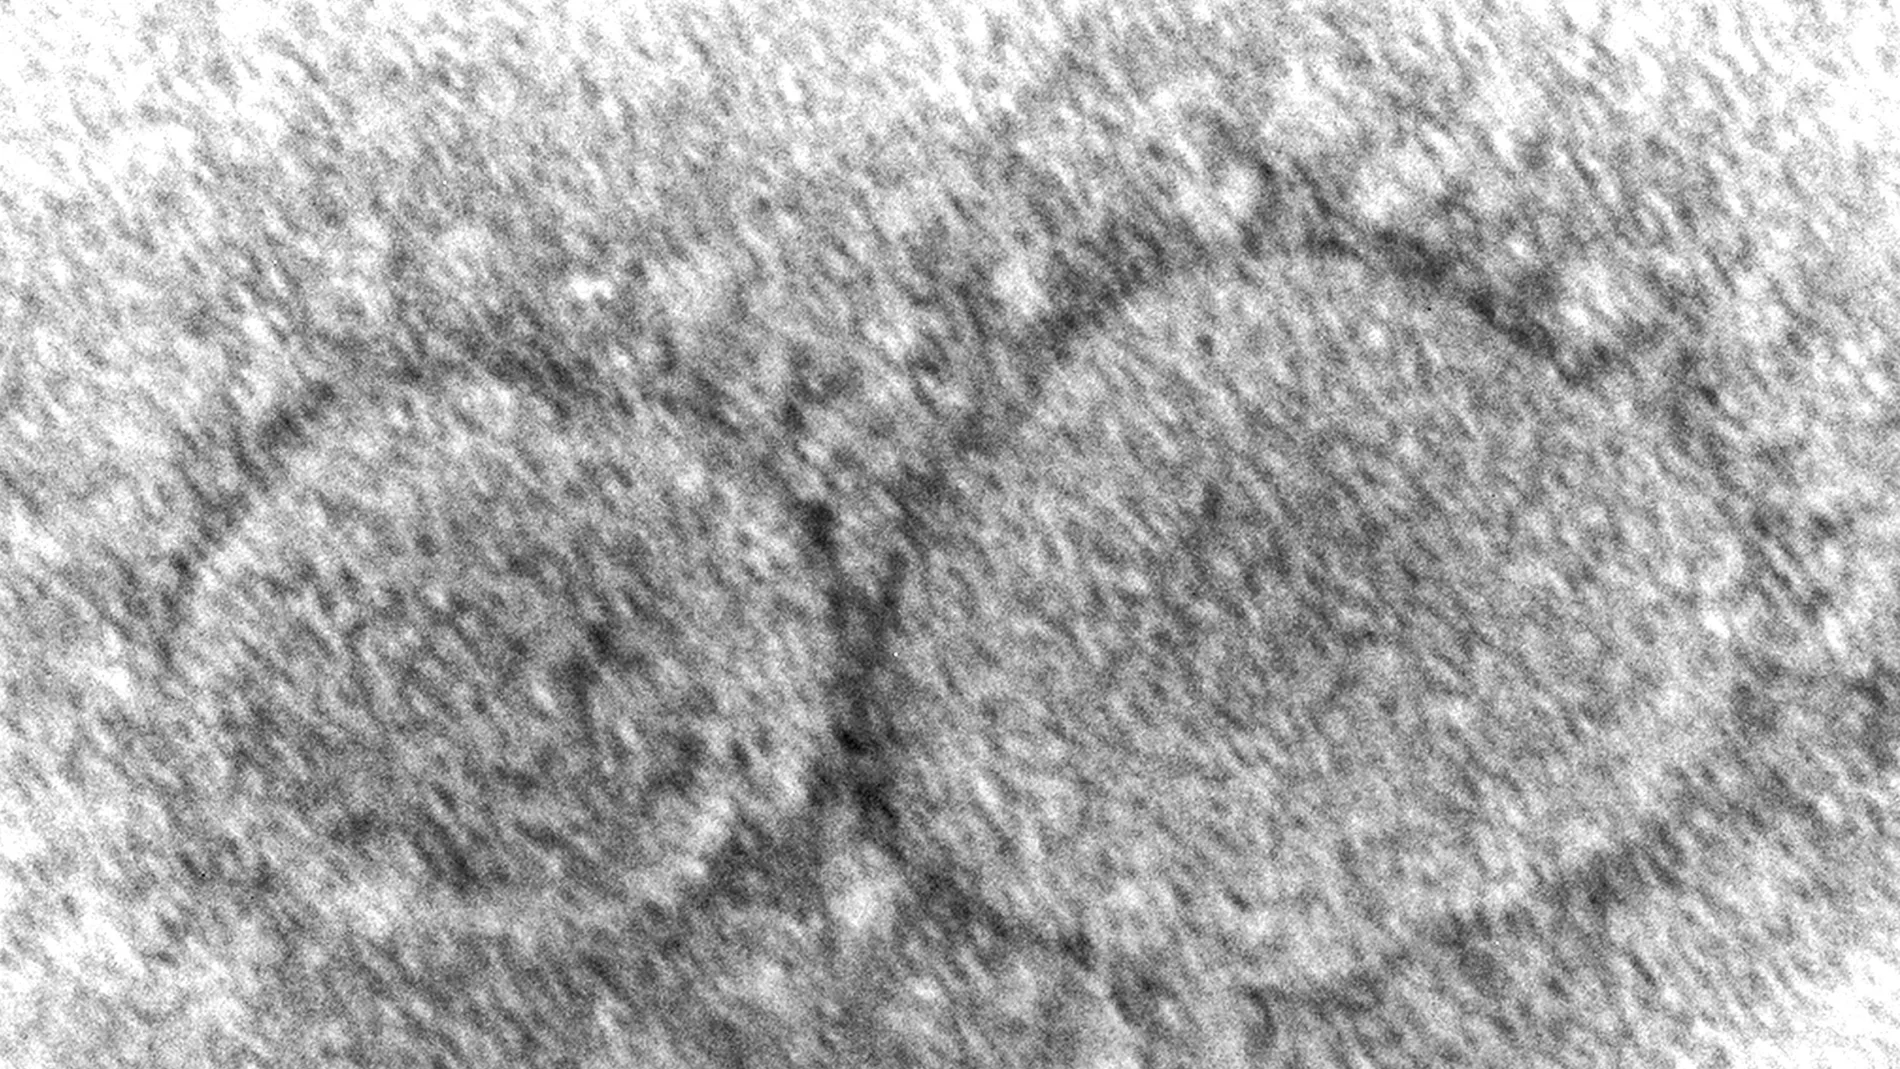 Imagen de microscopio proporcionada por los Centros para el Control y la Prevención de Enfermedades que muestra partículas del virus SARS-CoV-2 que causa la COVID-19